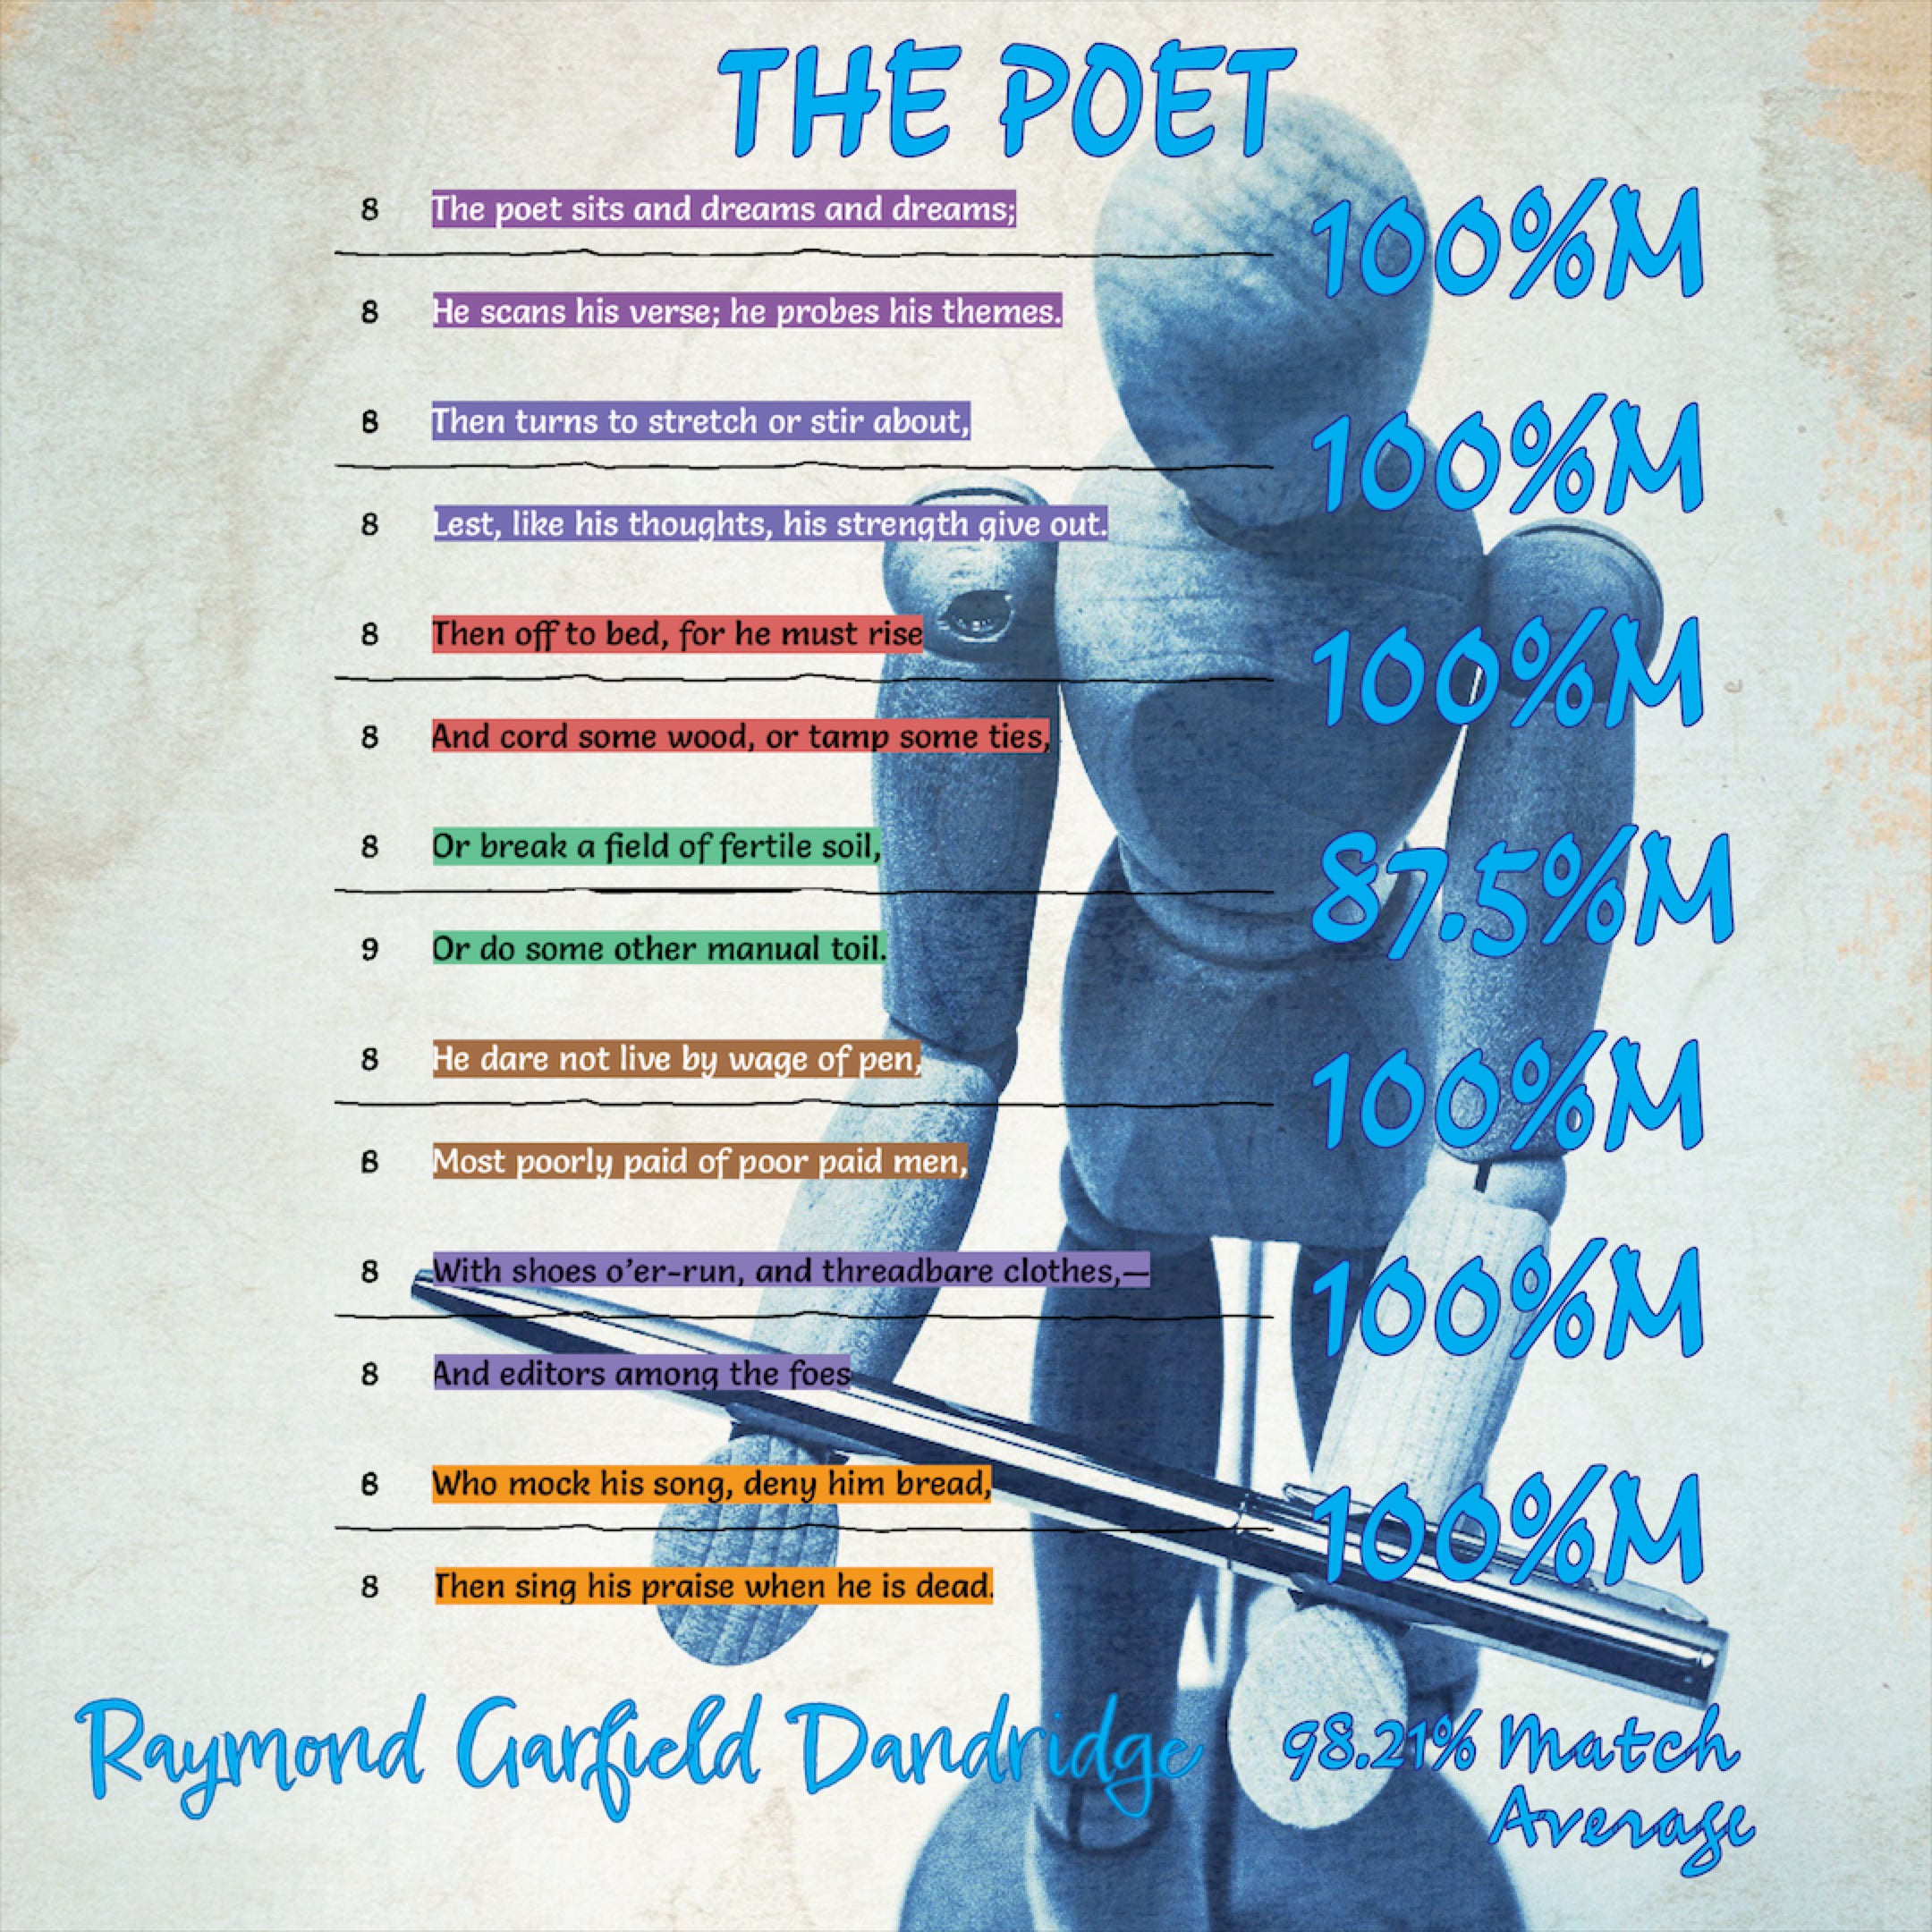 THE POET by Raymond Garfield Dandridge - Poet Tree Poetry